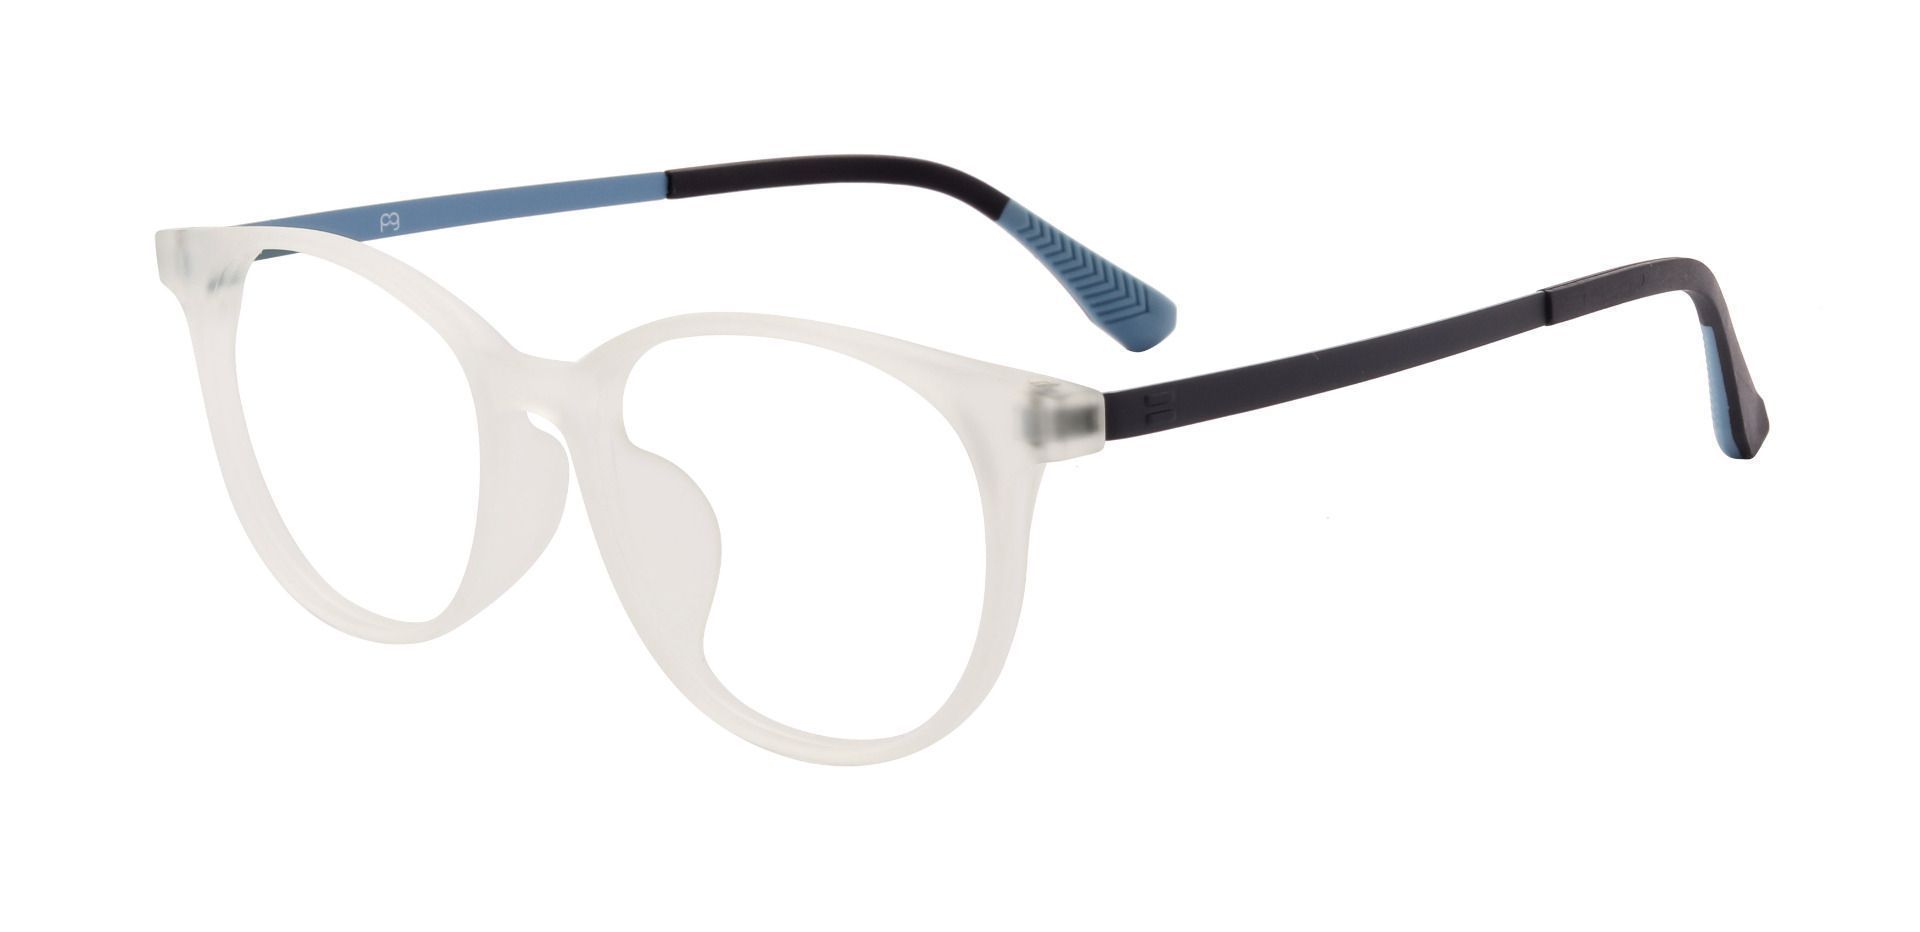 Hannigan Oval Prescription Glasses - Clear